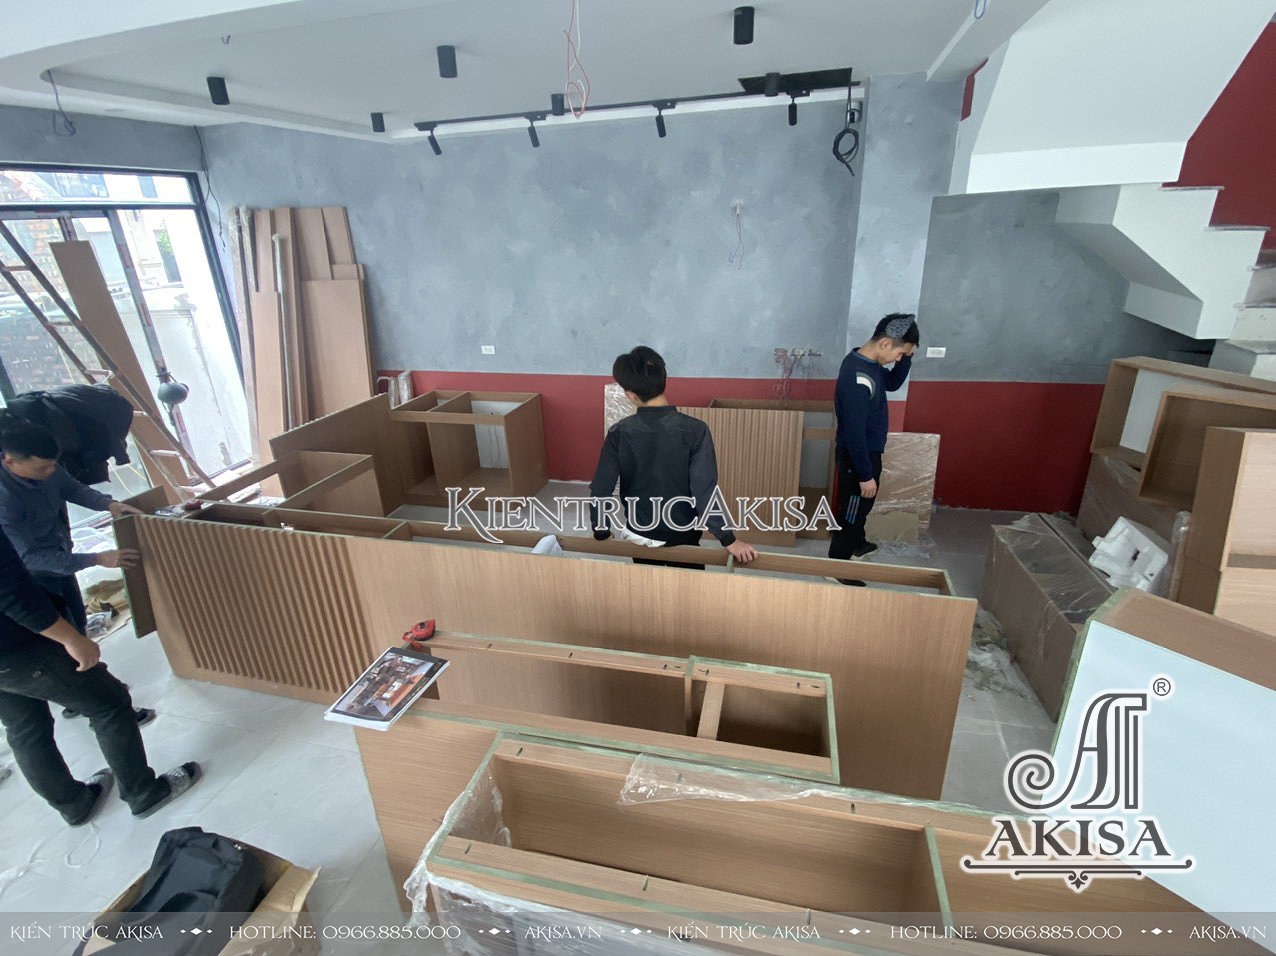 Akisa thiết kế và thi công cải tạo nội thất quán cafe sân vườn tại Hà Nội.